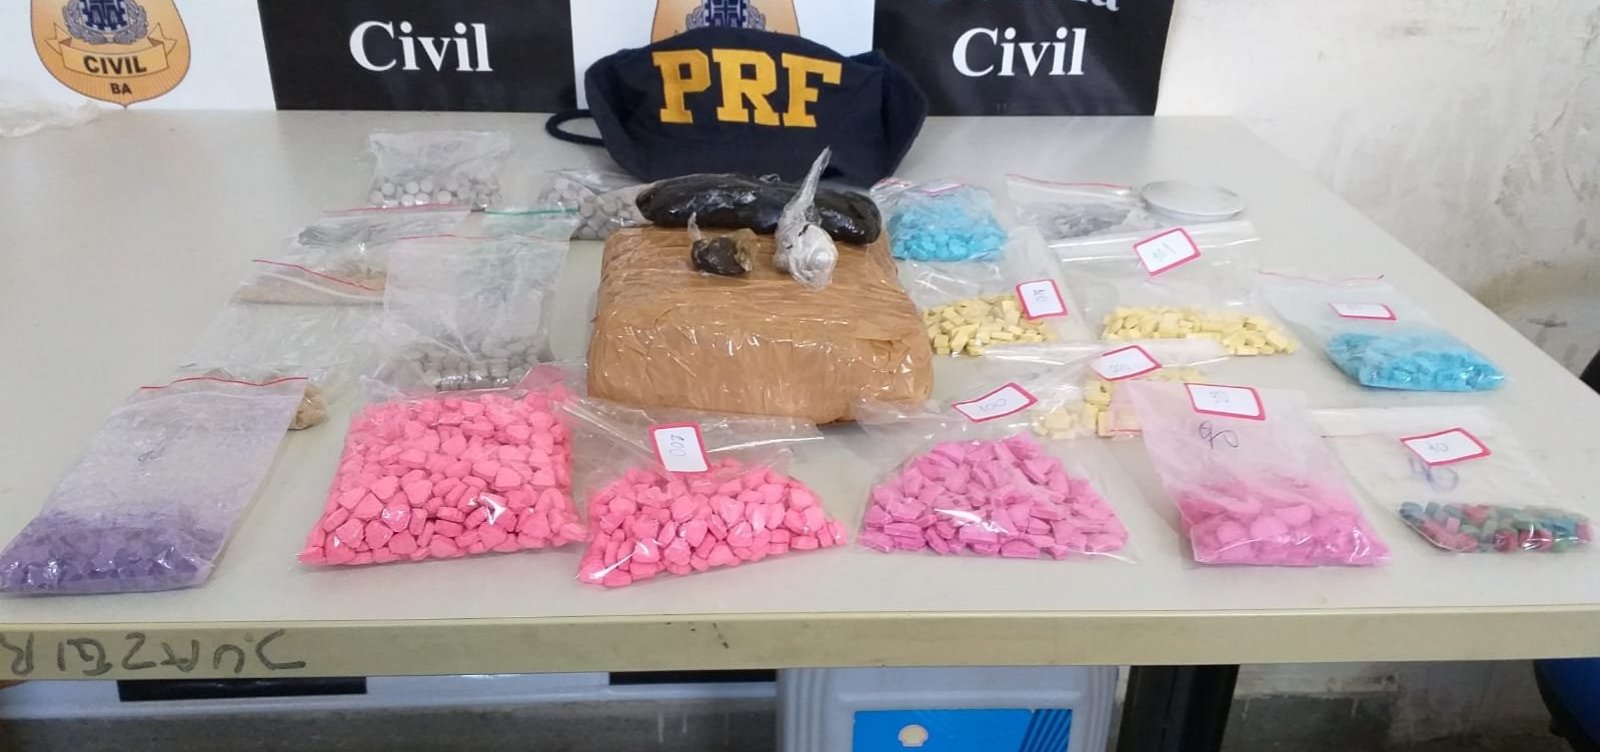 Casal é preso com 2,3 mil comprimidos de ecstasy escondidos em carro em Juazeiro